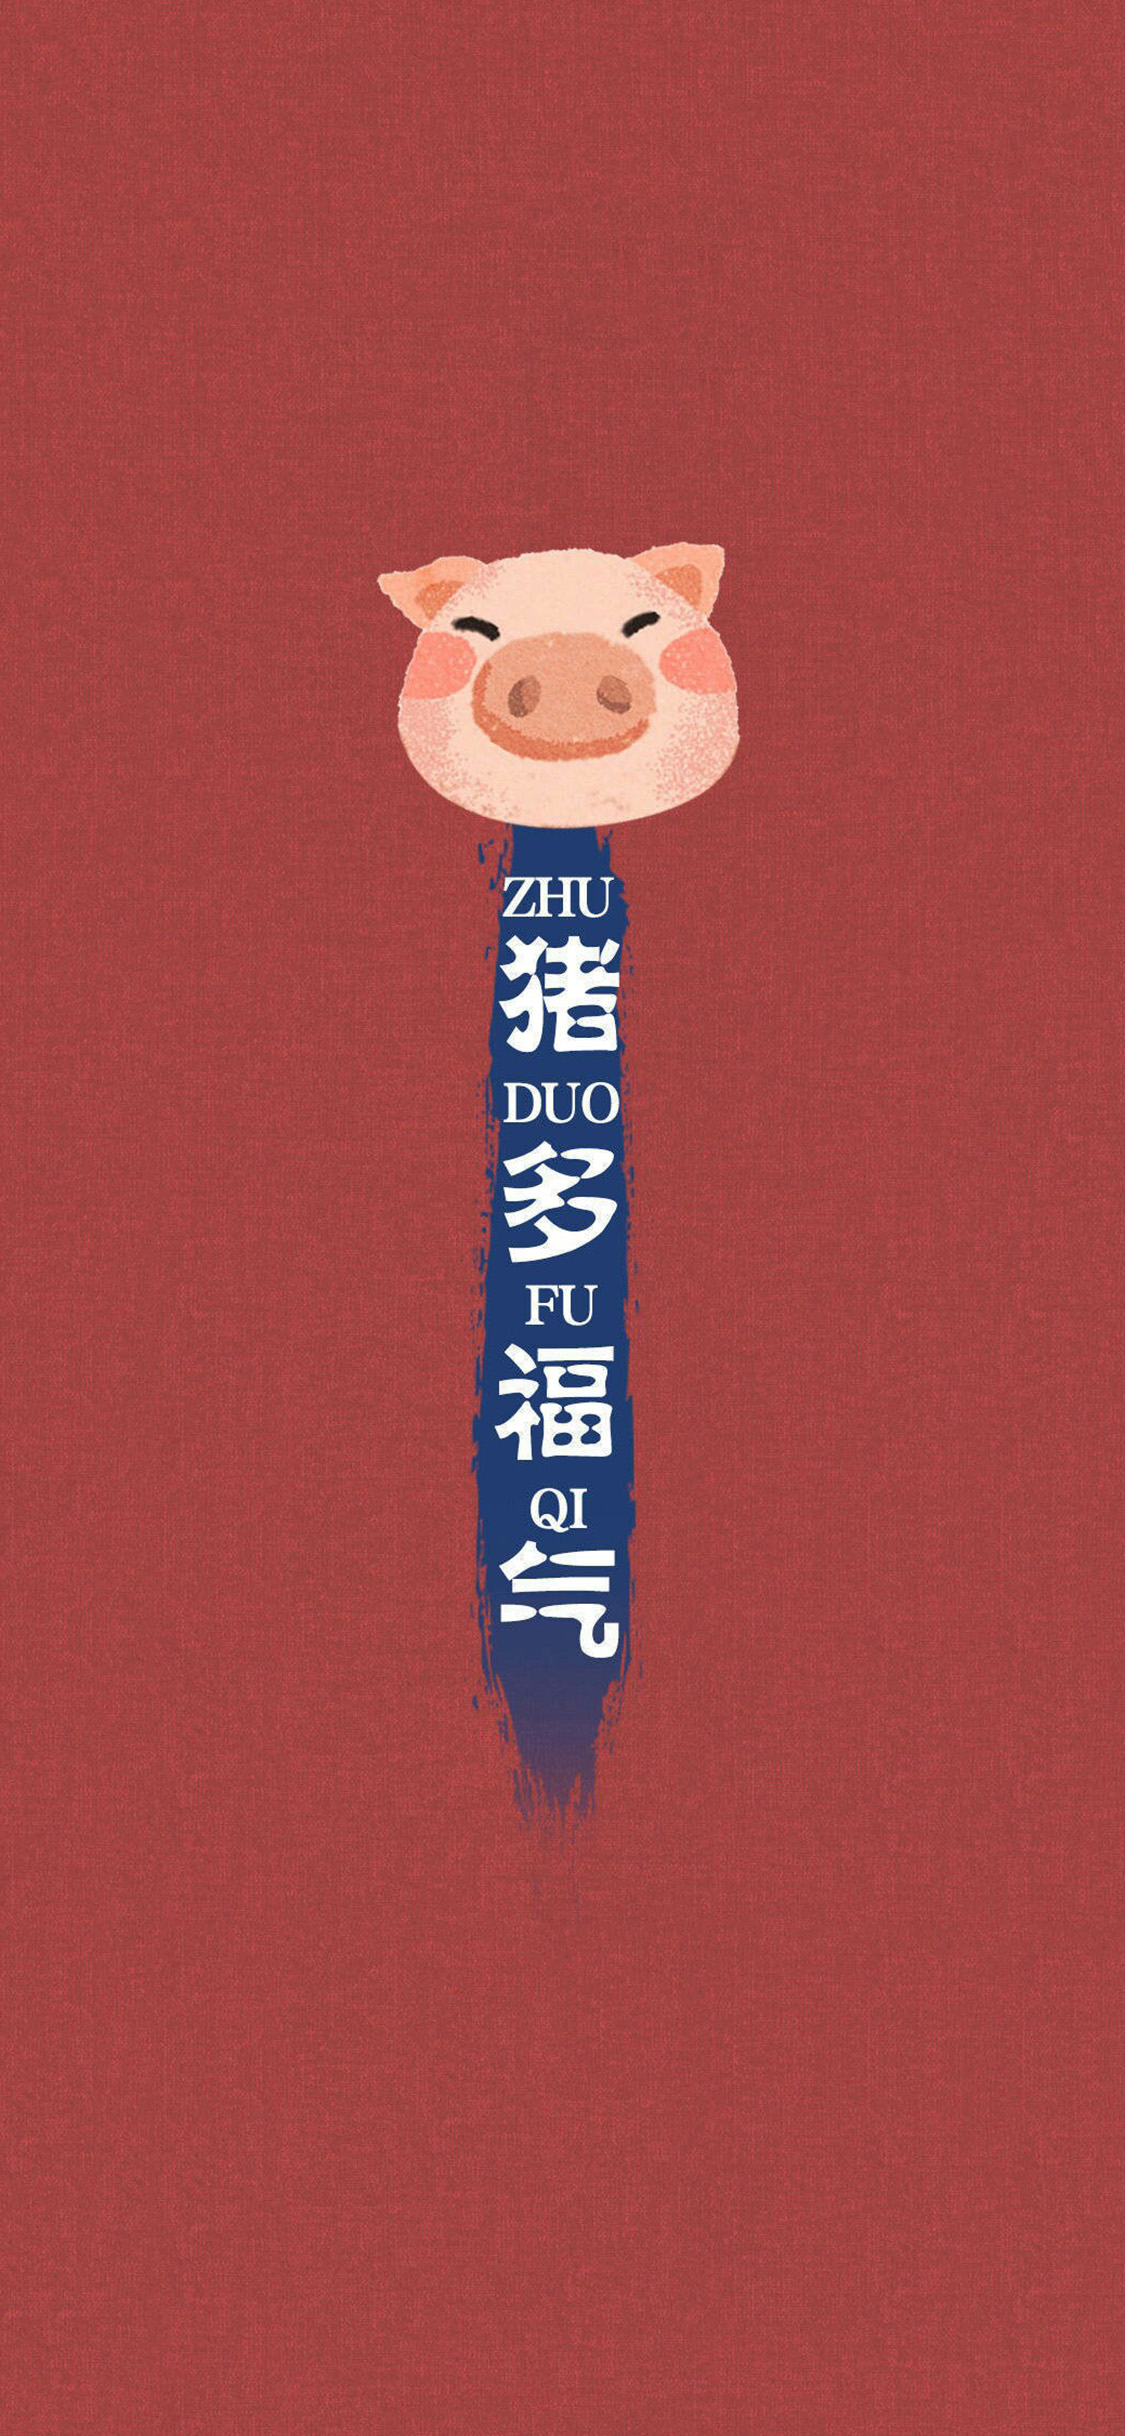 2019猪年红色手机壁纸大全 24张猪年开运手机壁纸推荐